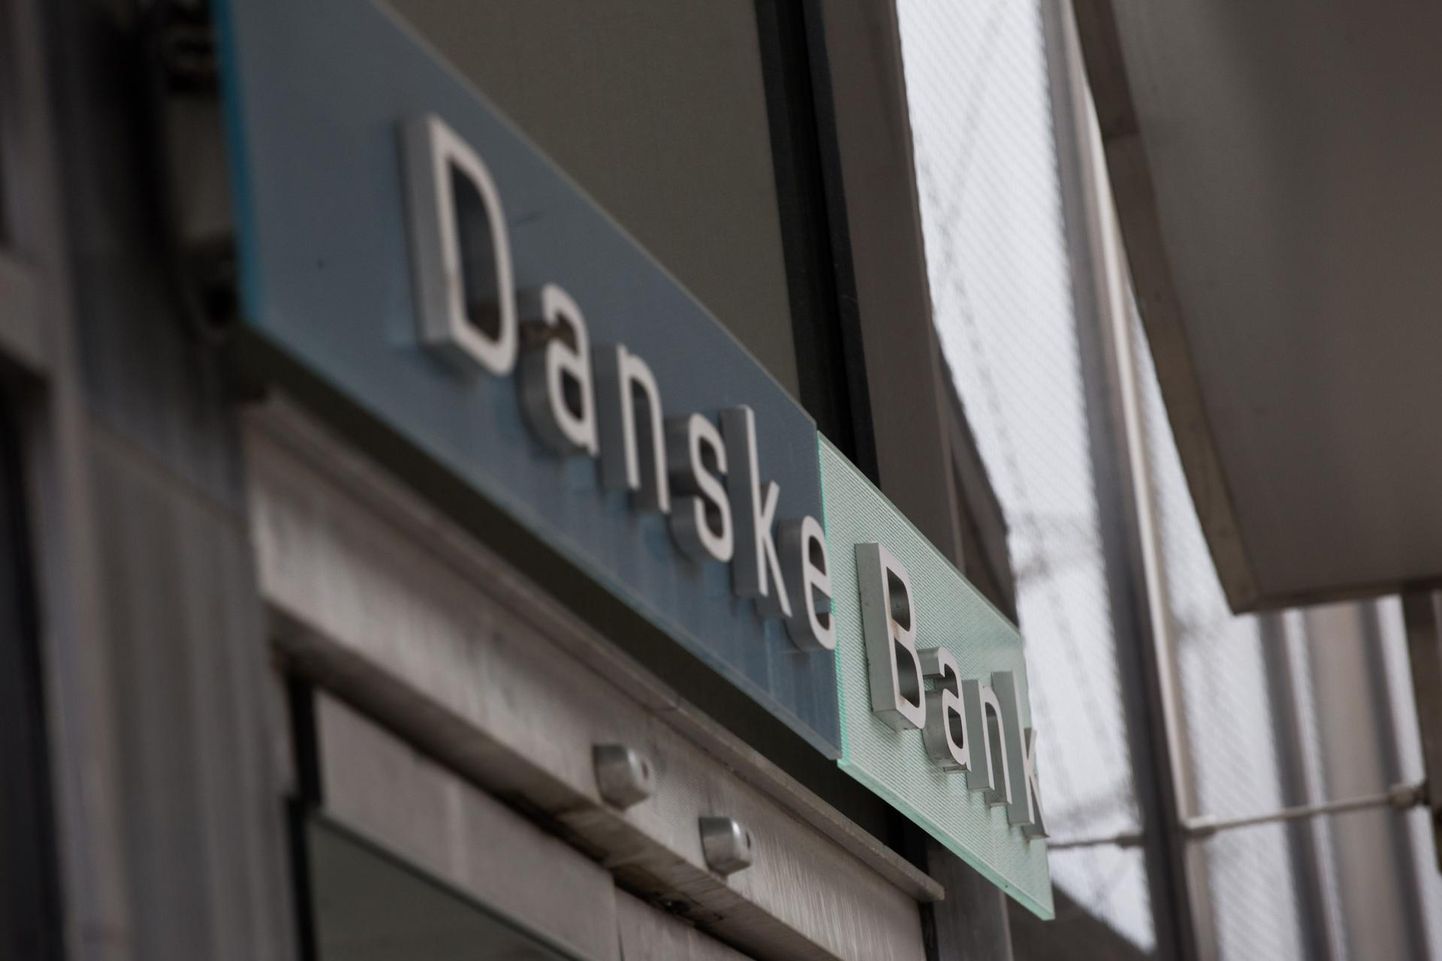 Danske Bank.